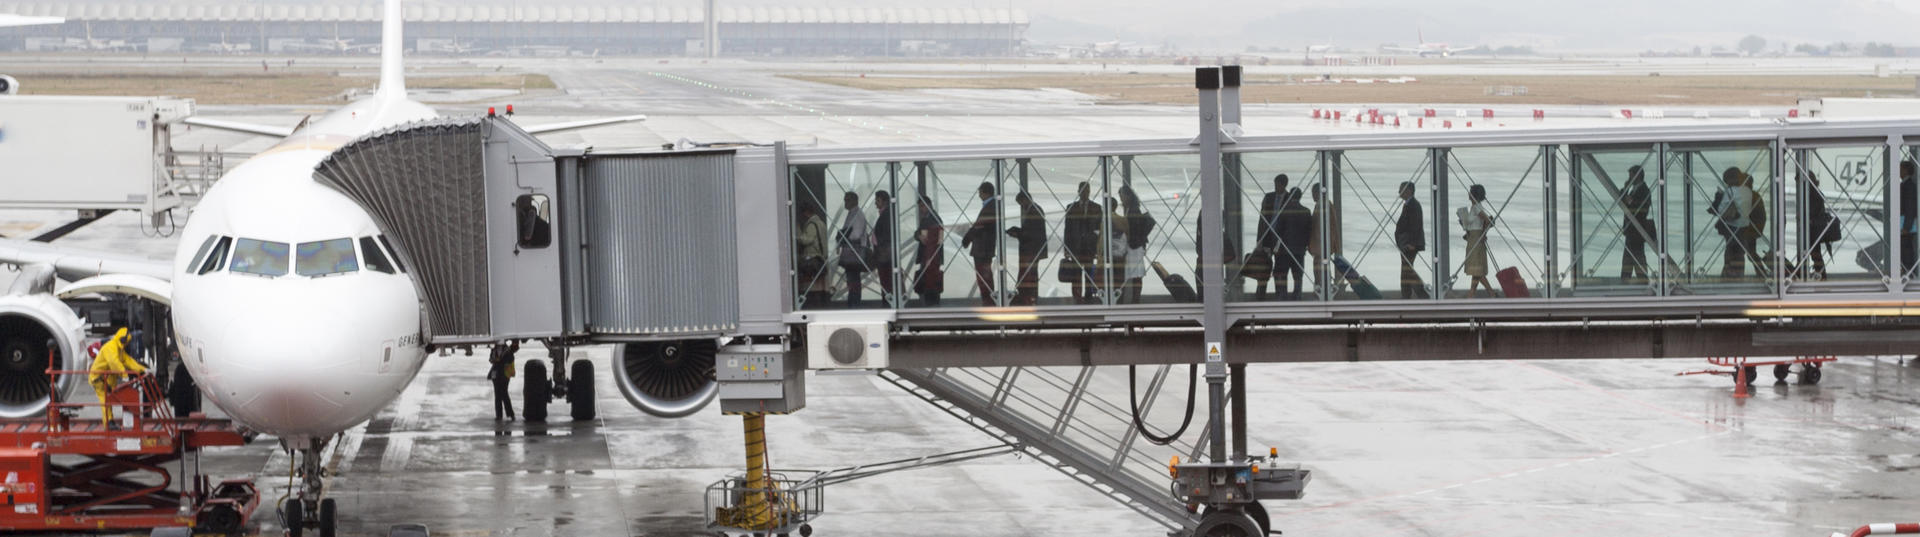 people boarding a plane